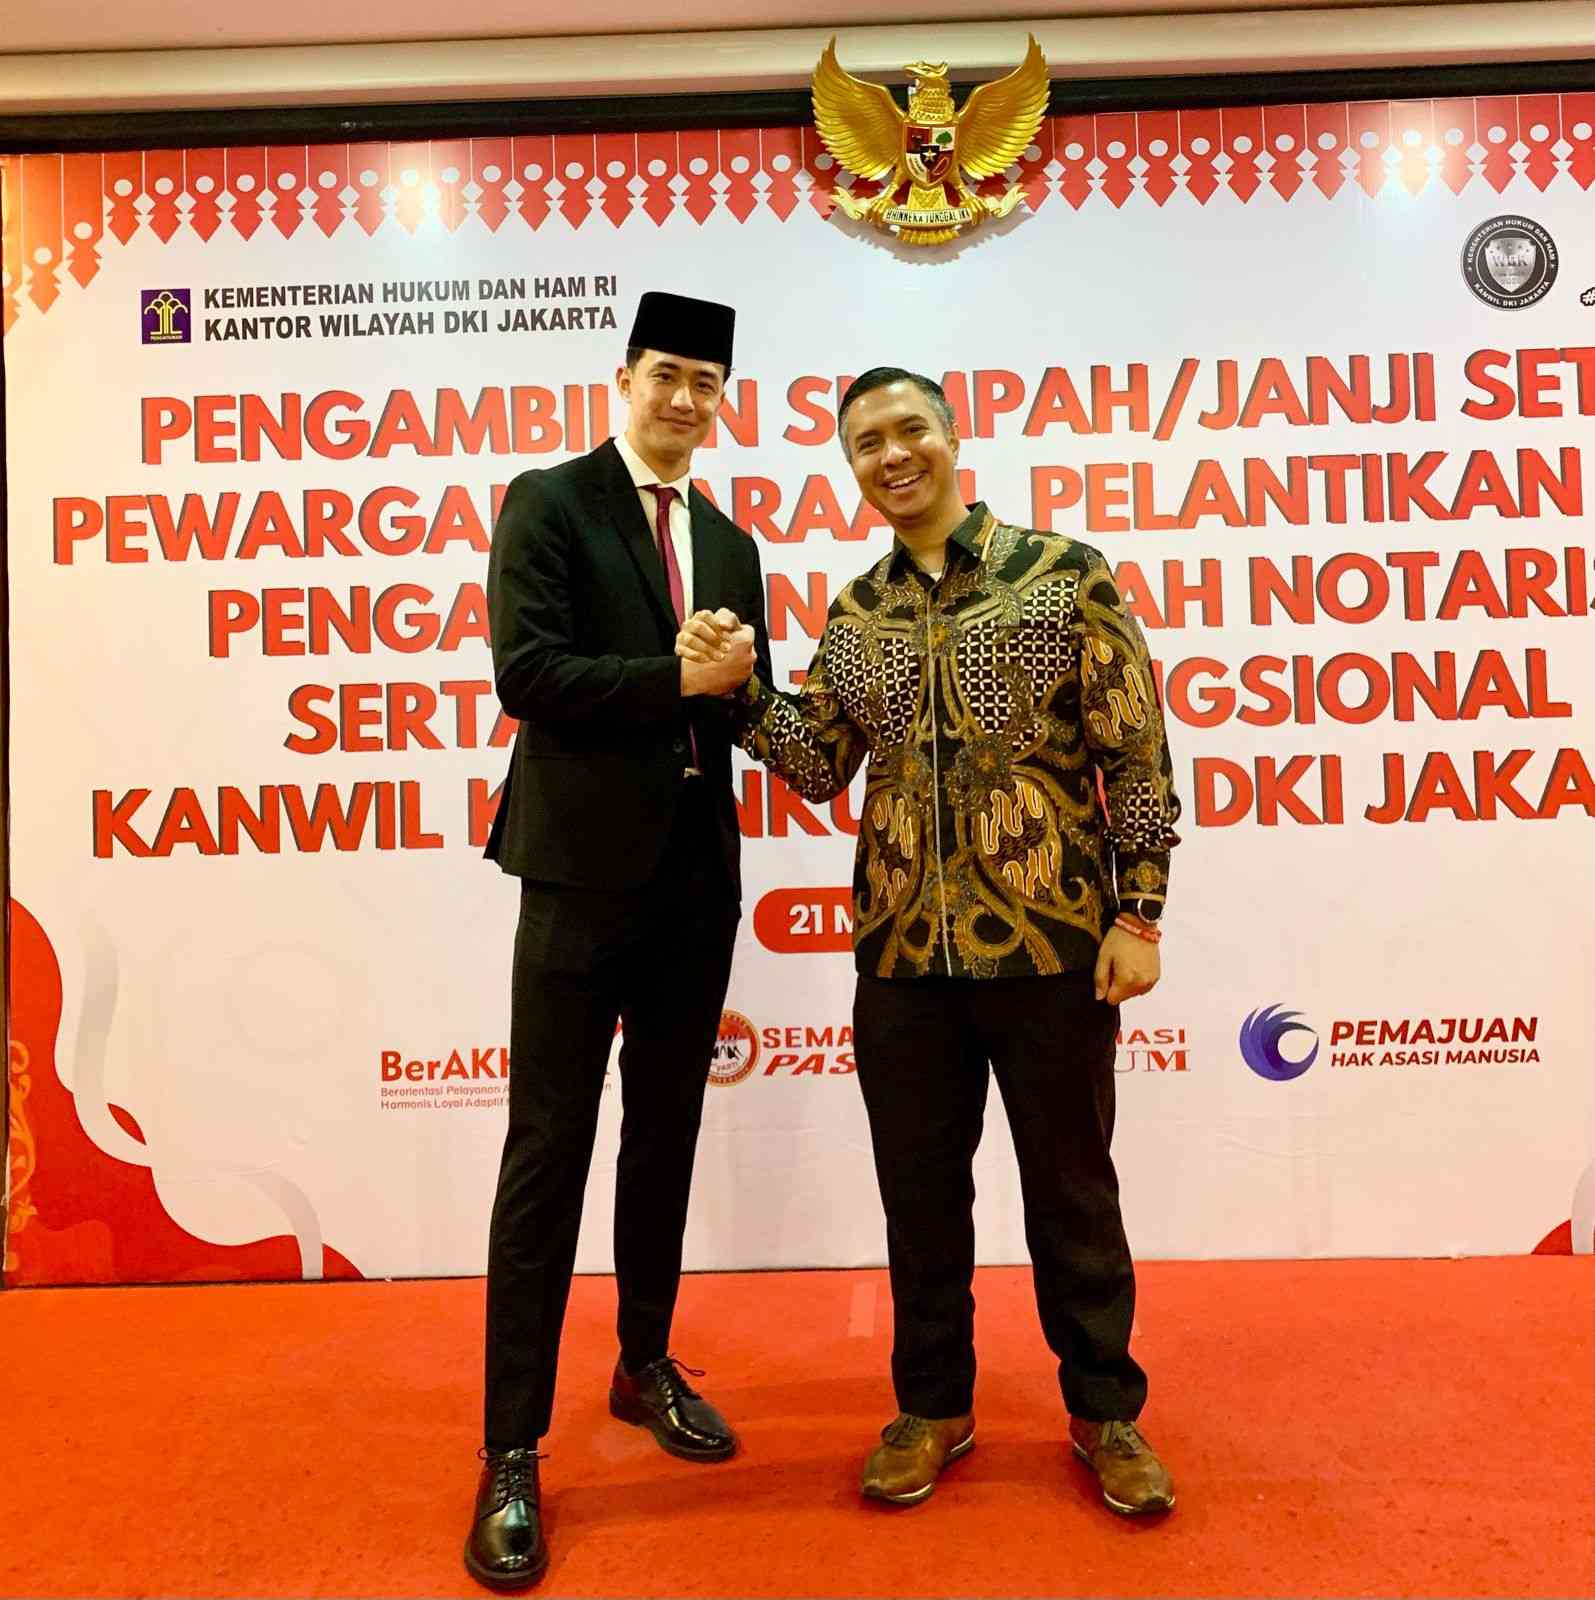 Cyrus Margono Mendapatkan Kembali Kewarganegaraan Indonesia, Menurut Hamdan Hamedan: Langkah Inovatif dalam Hukum tentang Anak dengan Kewarganegaraan Ganda